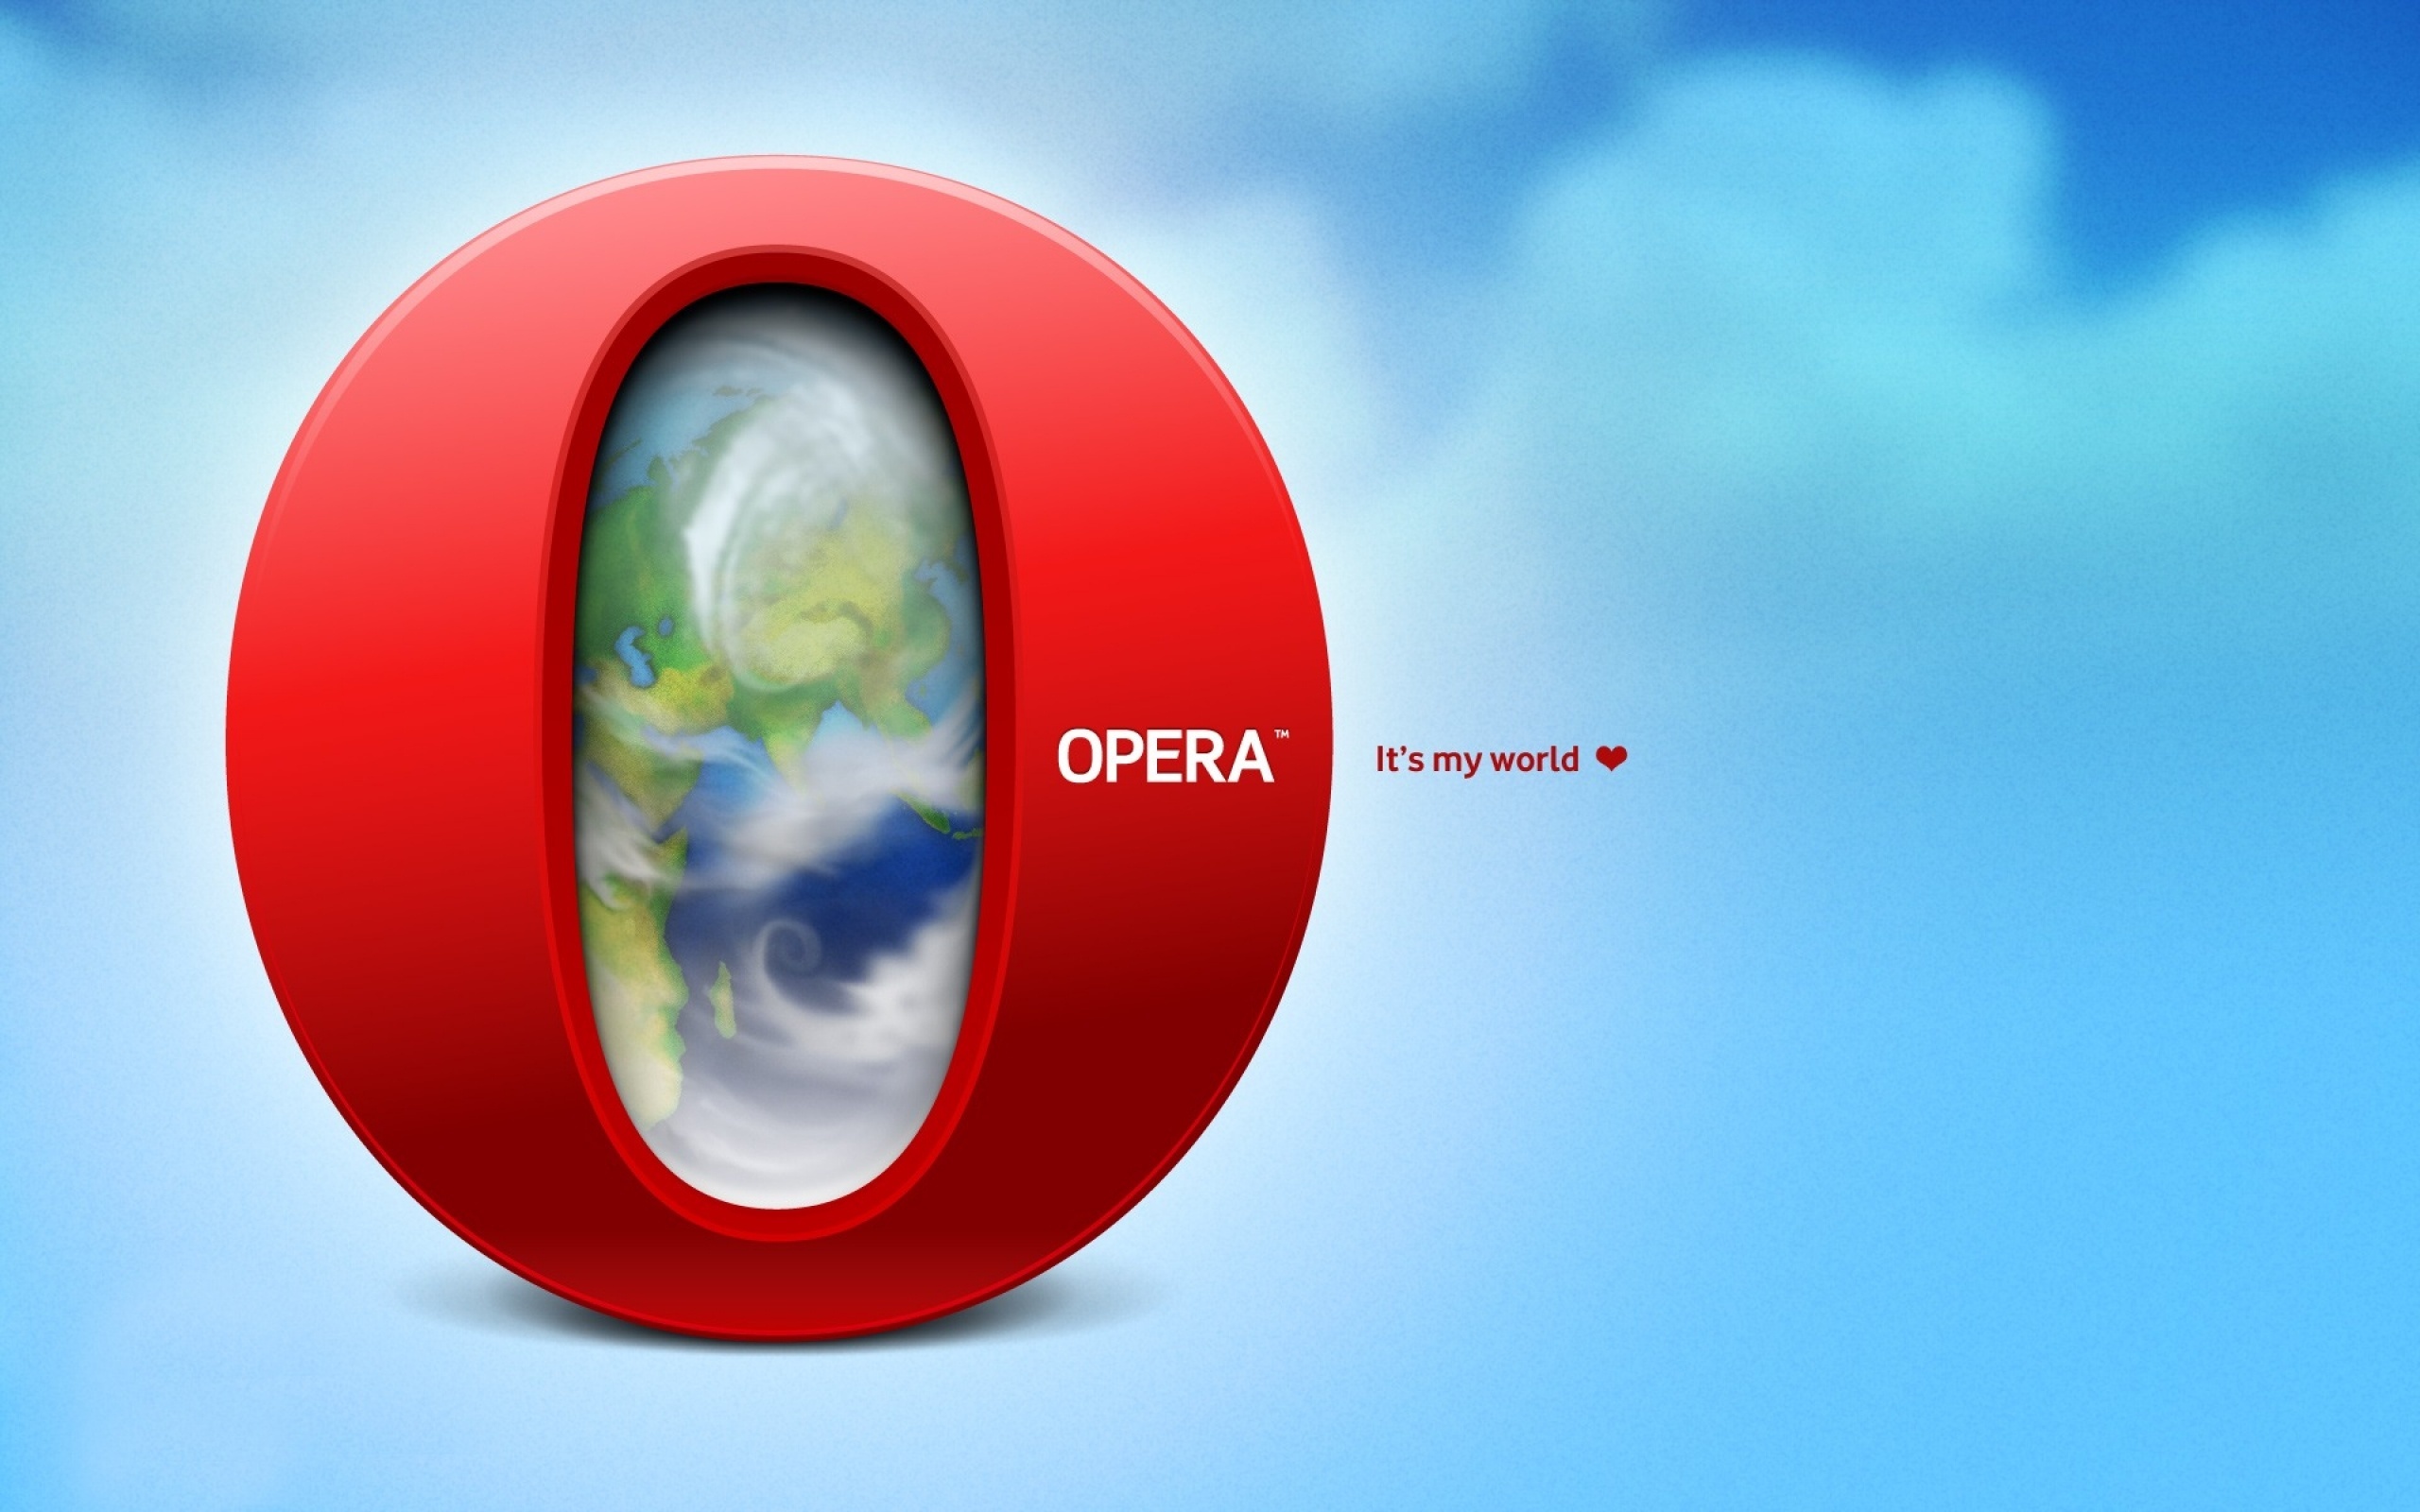 technology, opera wallpaper for mobile